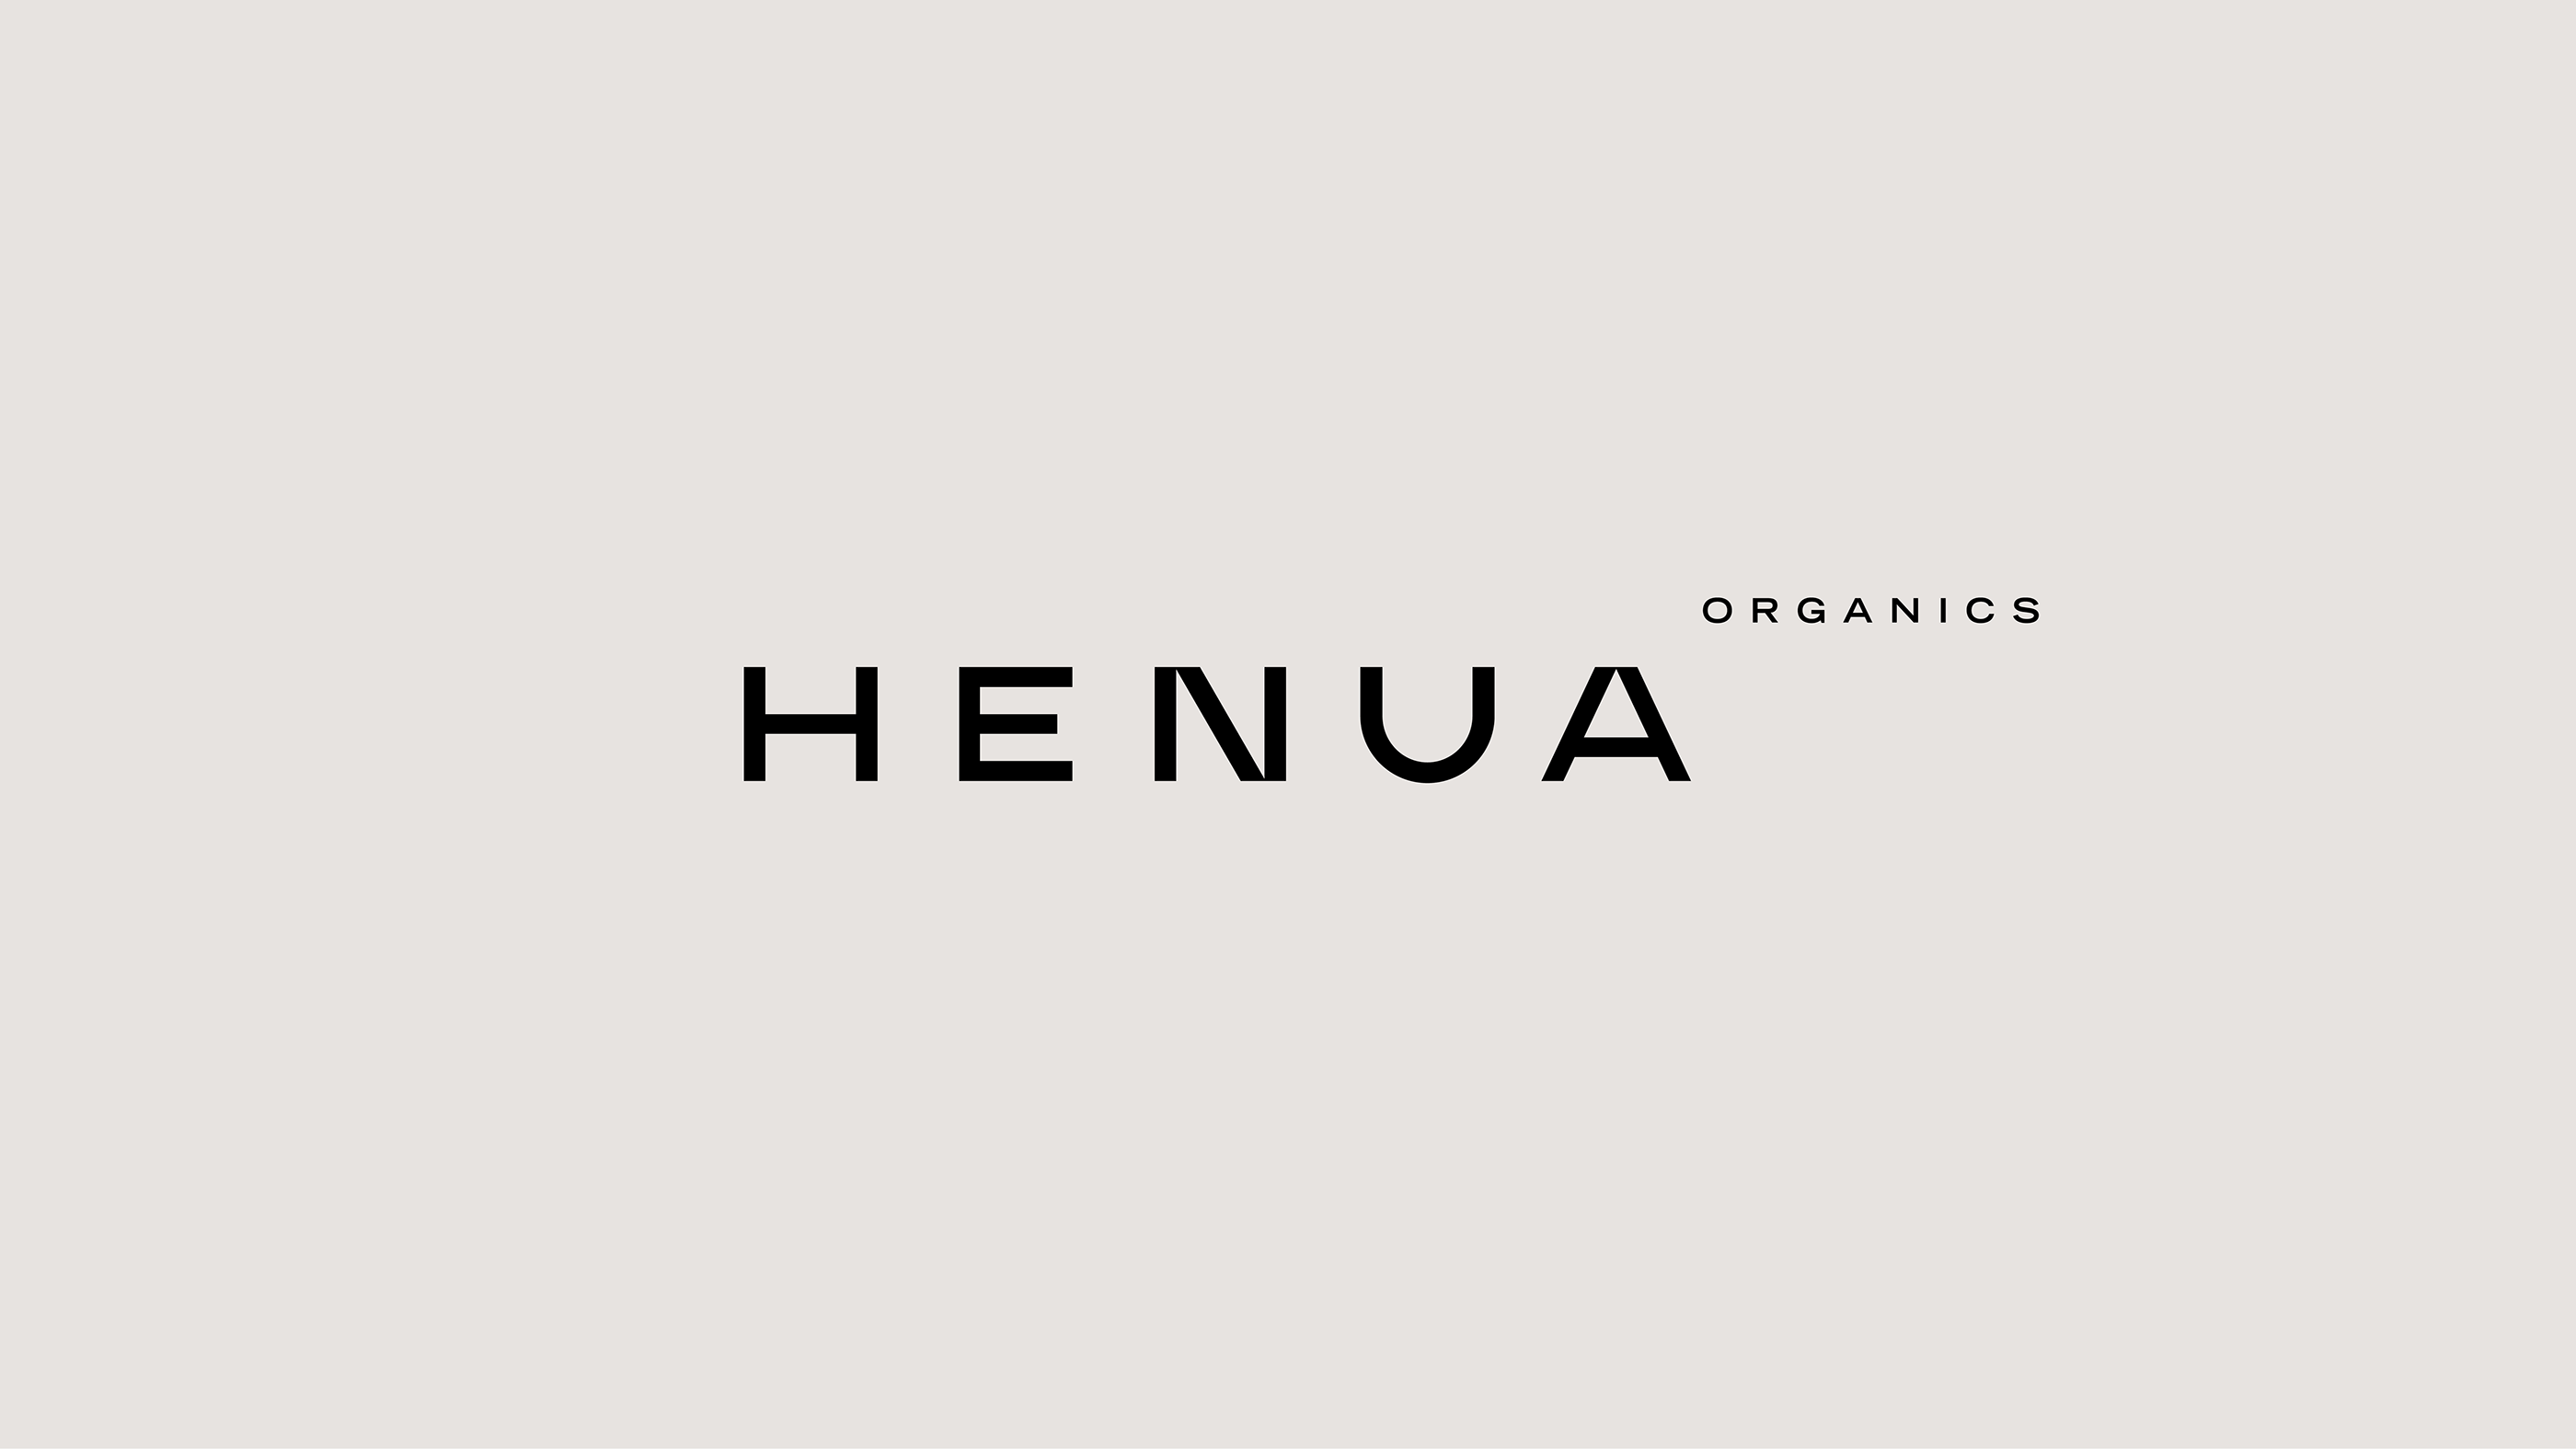 Henua Organics on Behance4d9e1c75481885.5c4e407bdc8e1.png